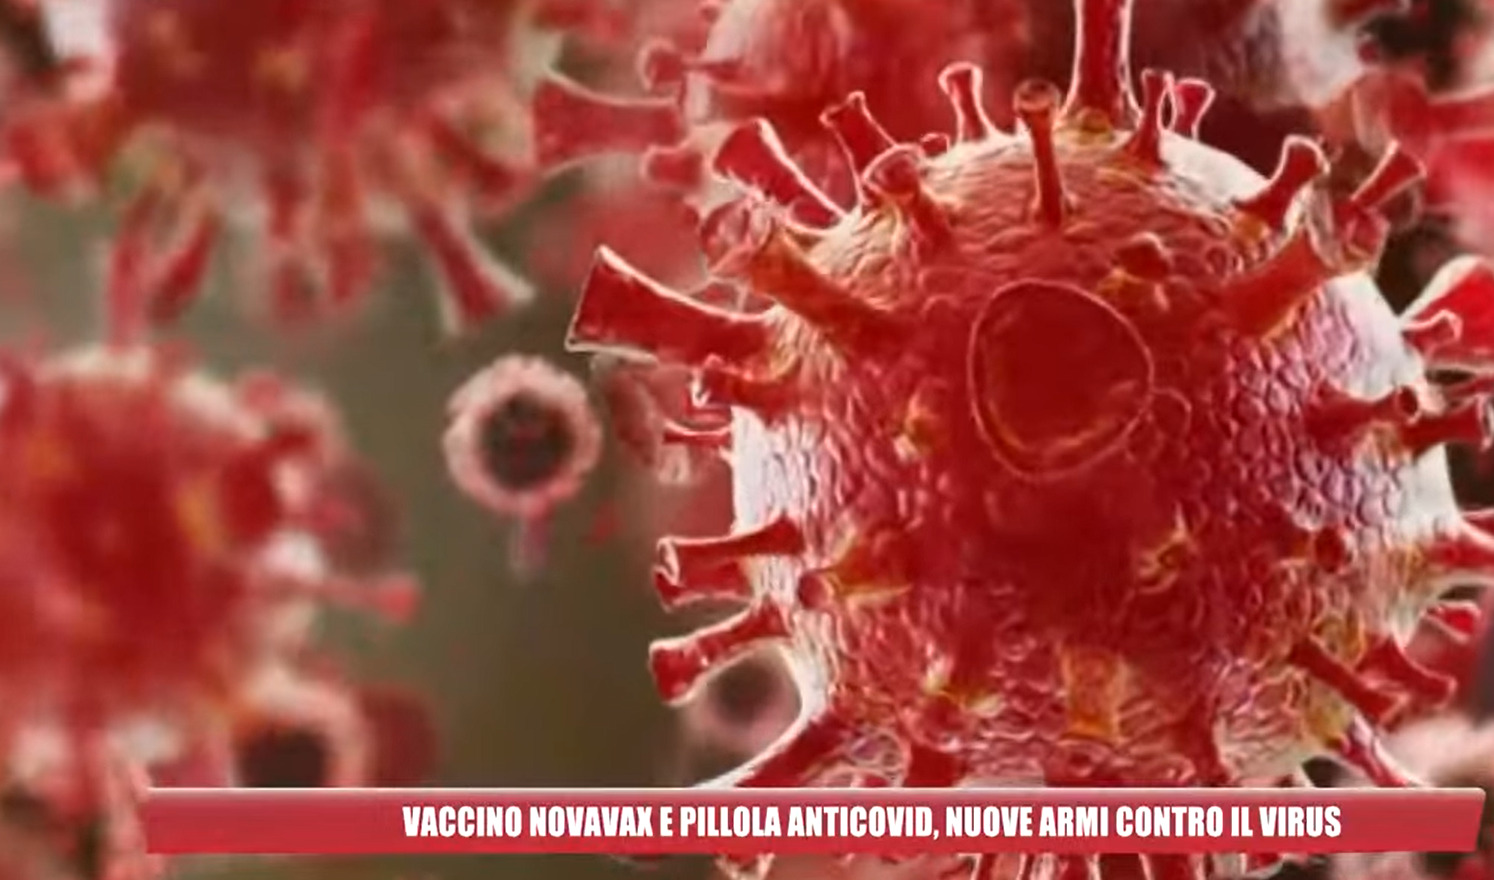 La percezione che la pandemia sia finita limita adesione al vaccino Novavax